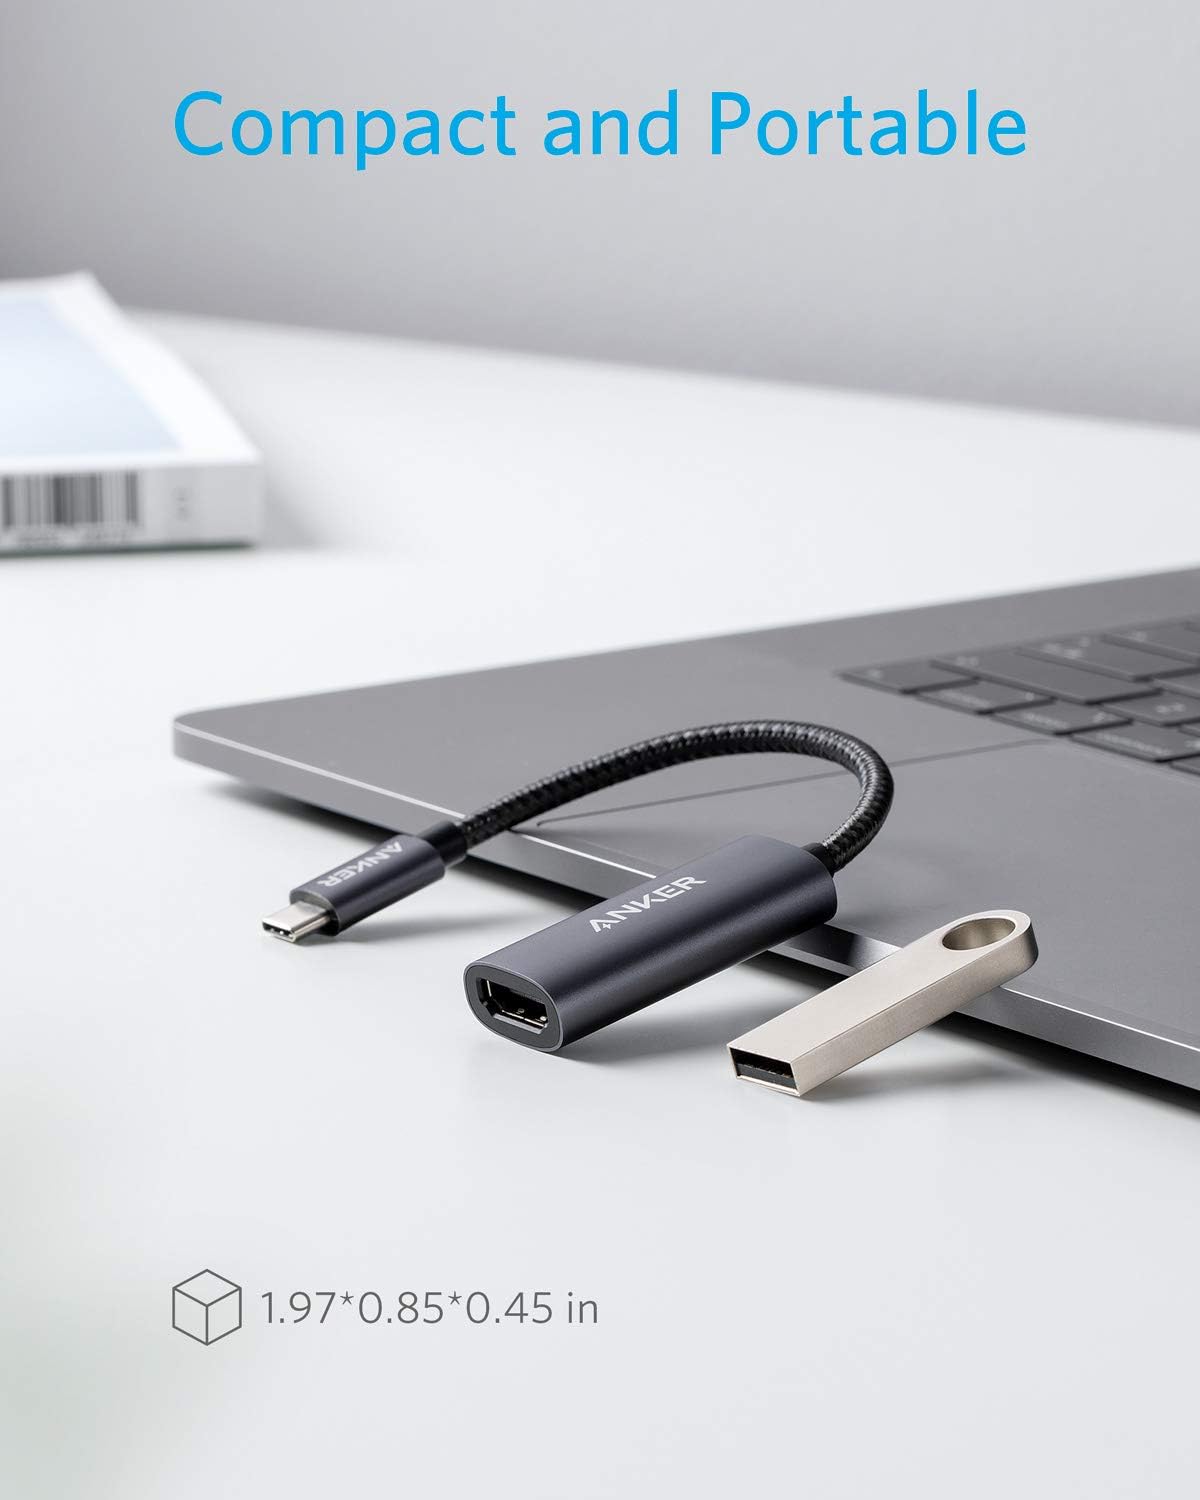 Anker - Adaptador USB C a HDMI (@60Hz), USB-C (HDMI 4K) Anker